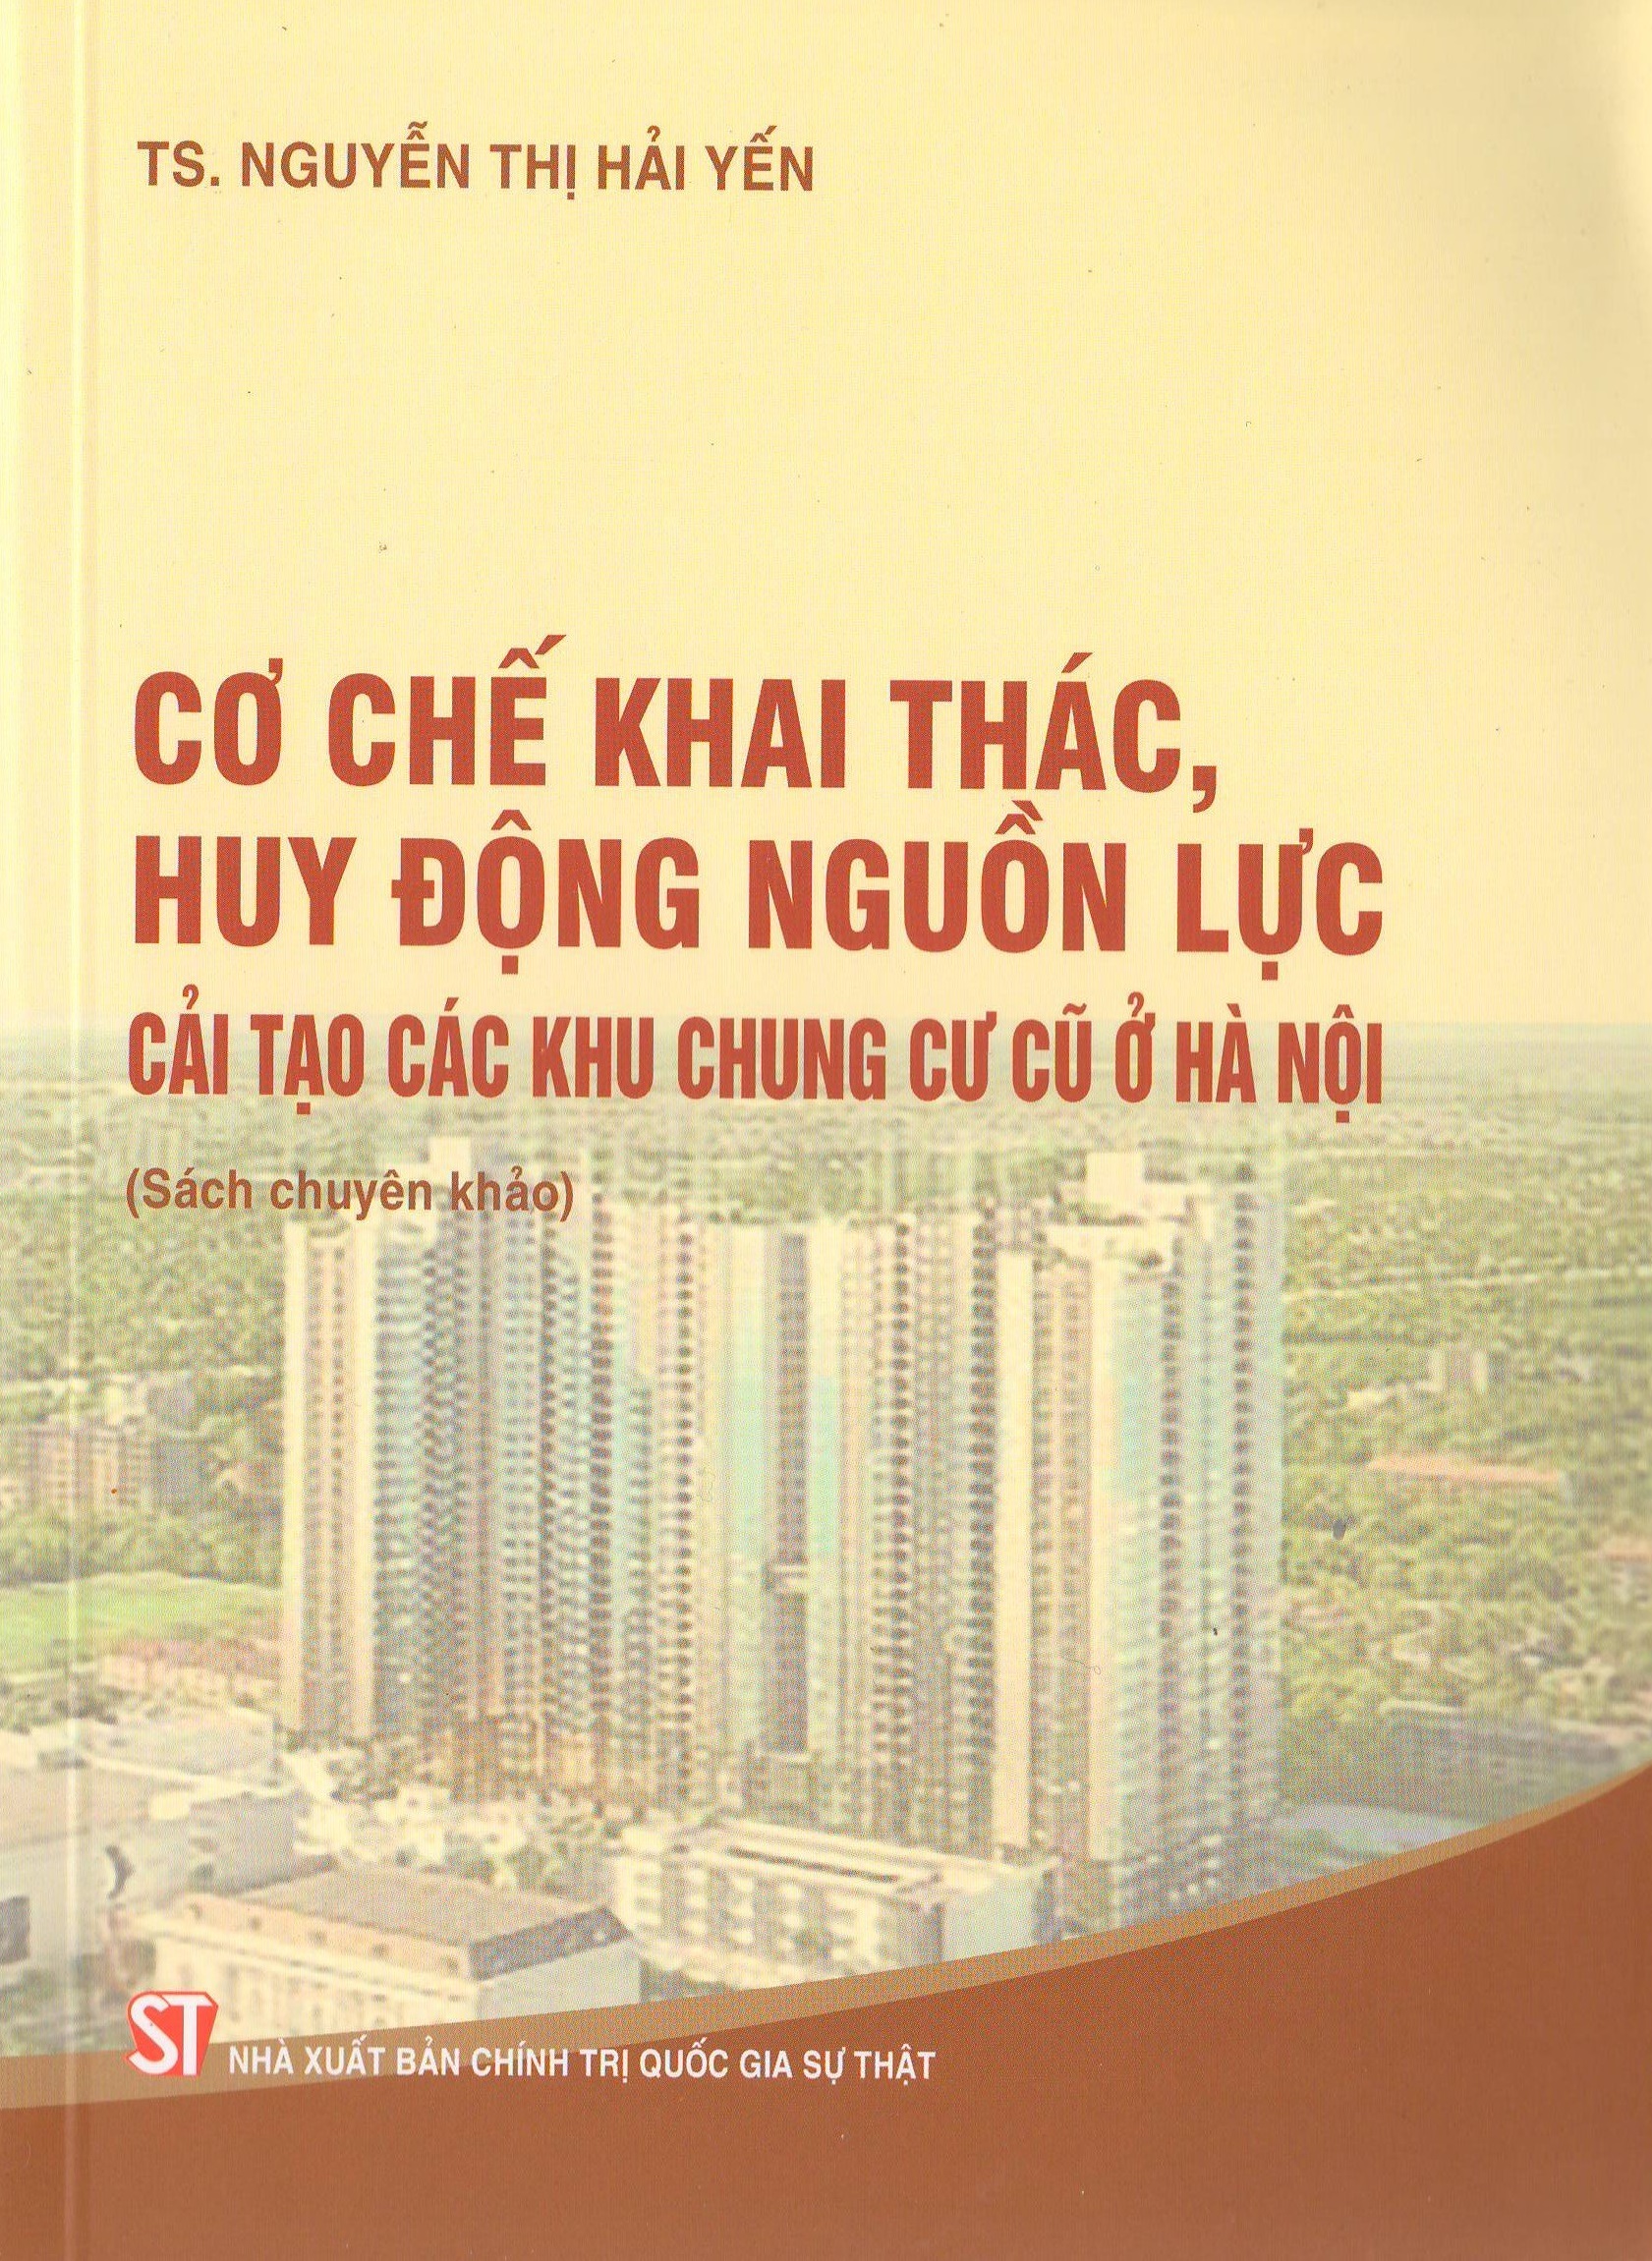 Cơ chế khai thác, huy động nguồn lực cải tạo các khu chung cư cũ ở Hà Nội (Sách chuyên khảo)